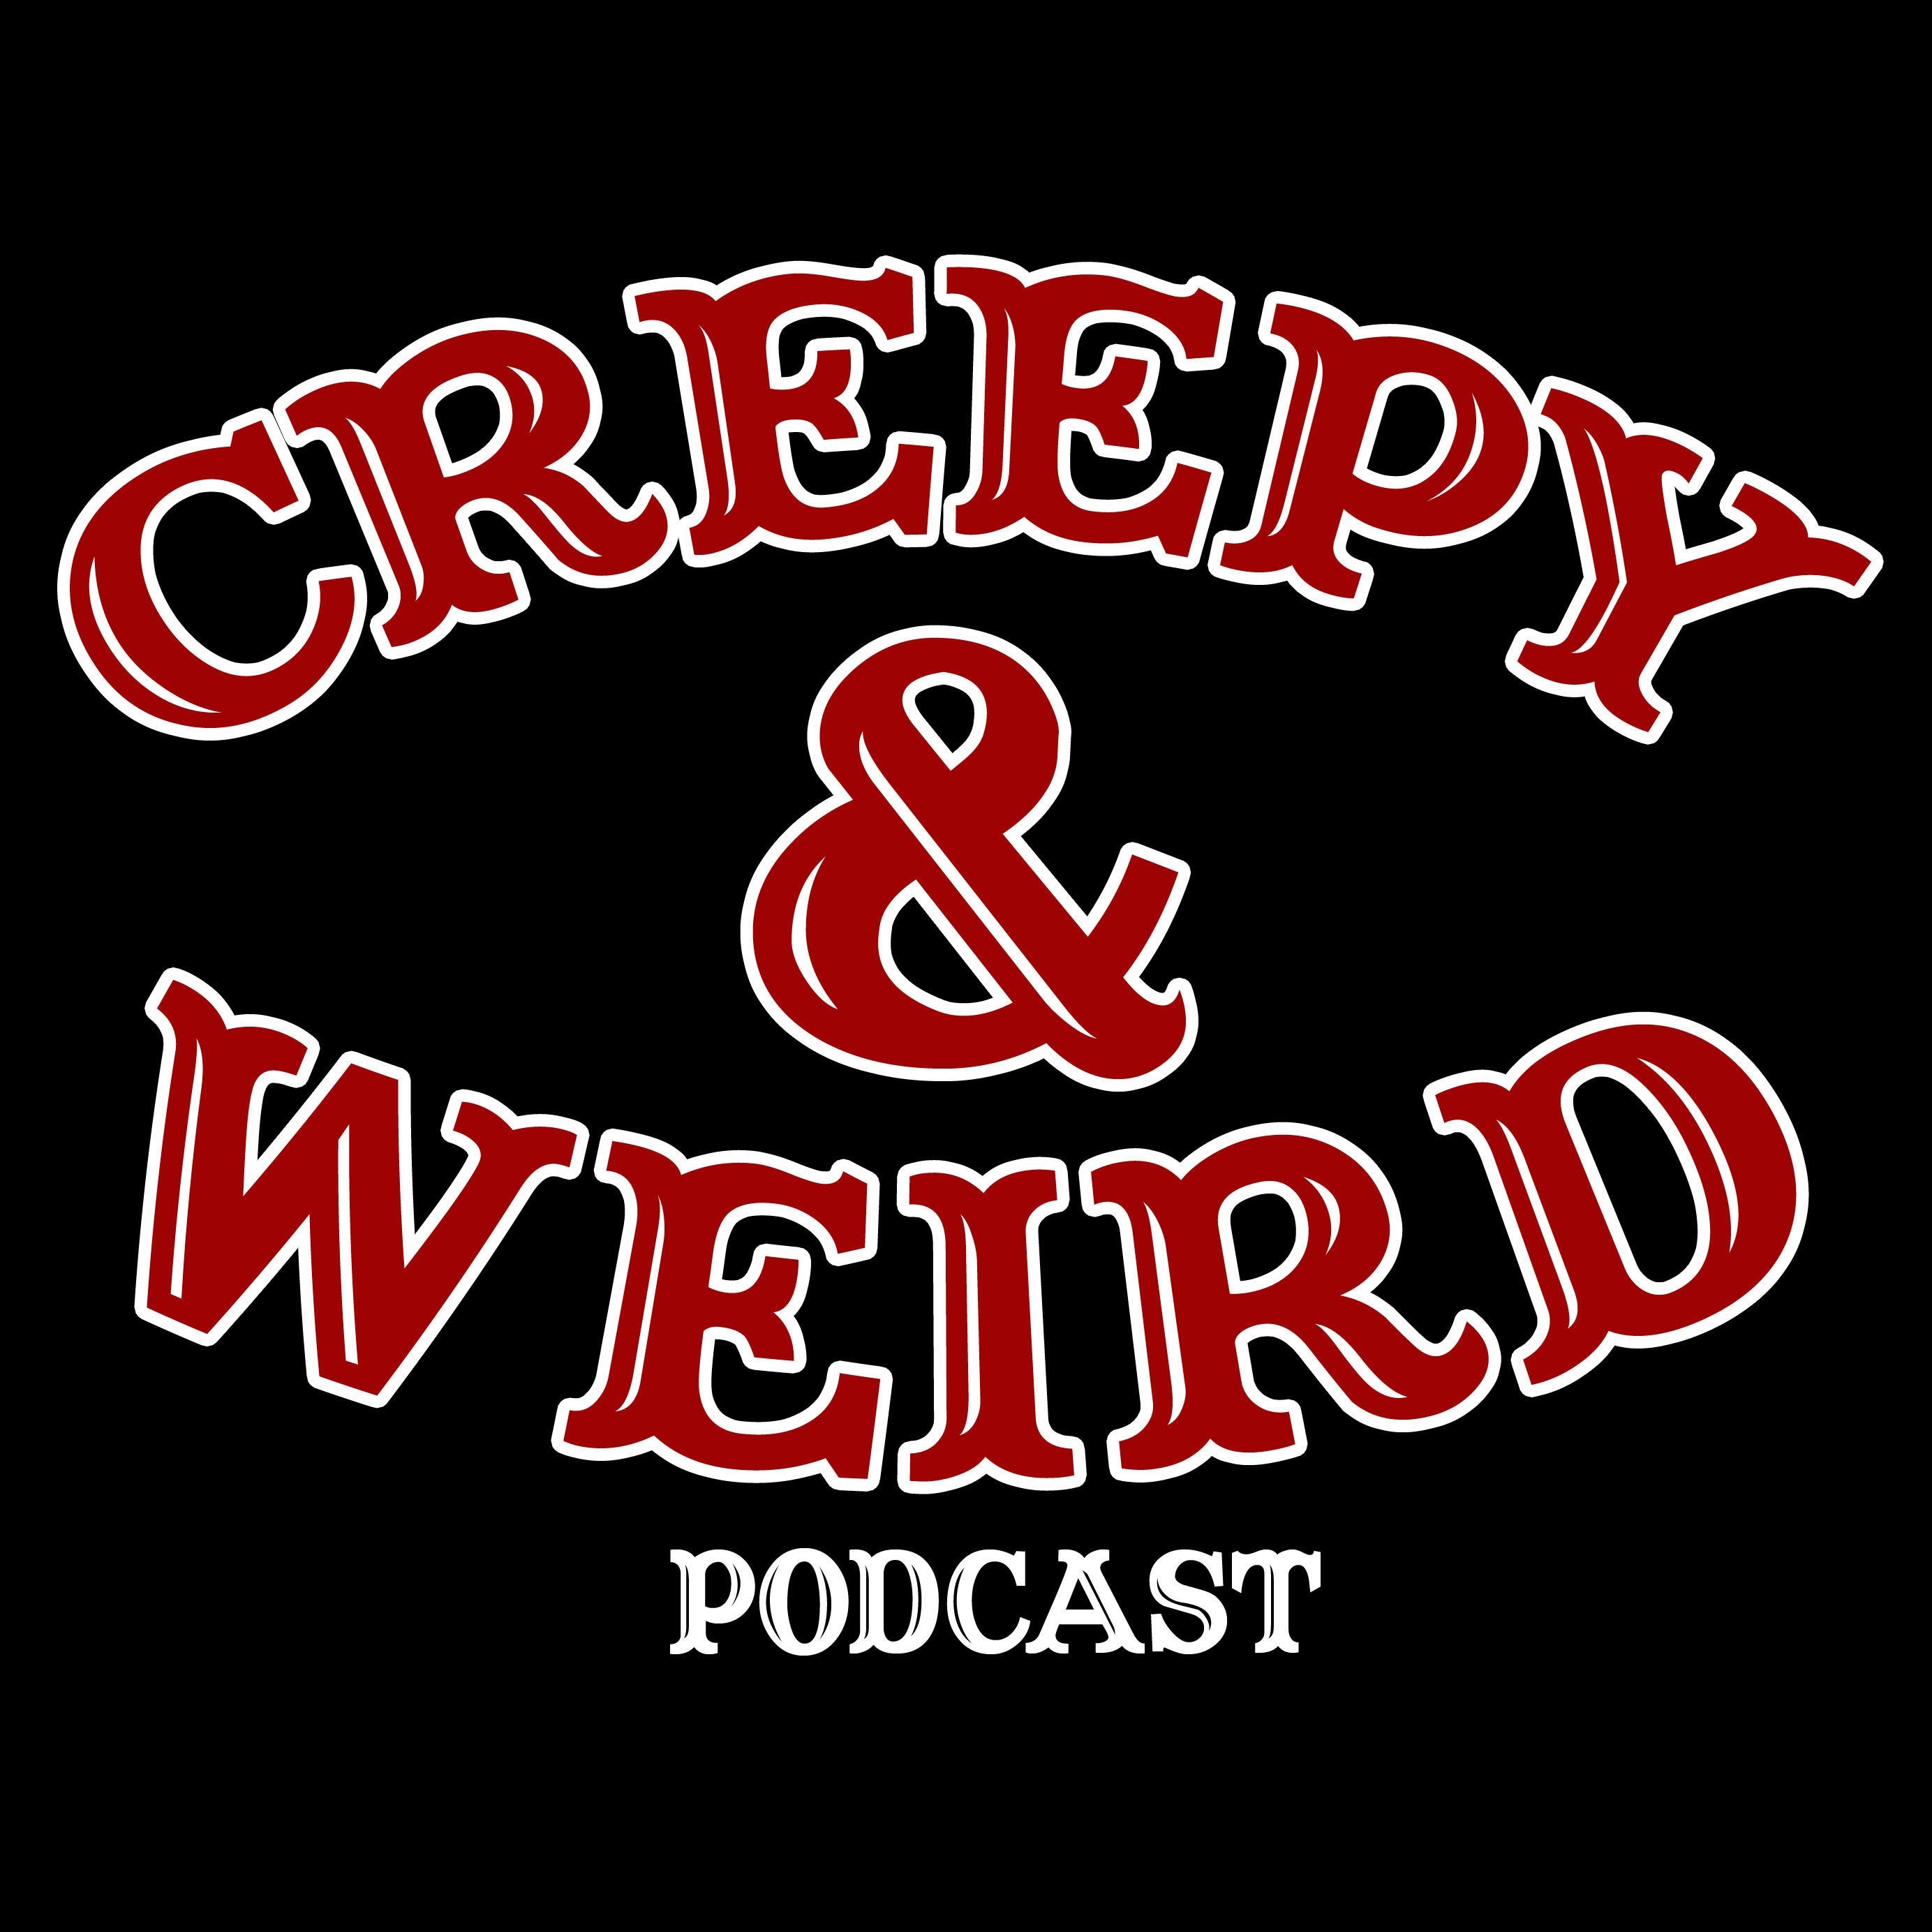 Creepy And Weird Podcast